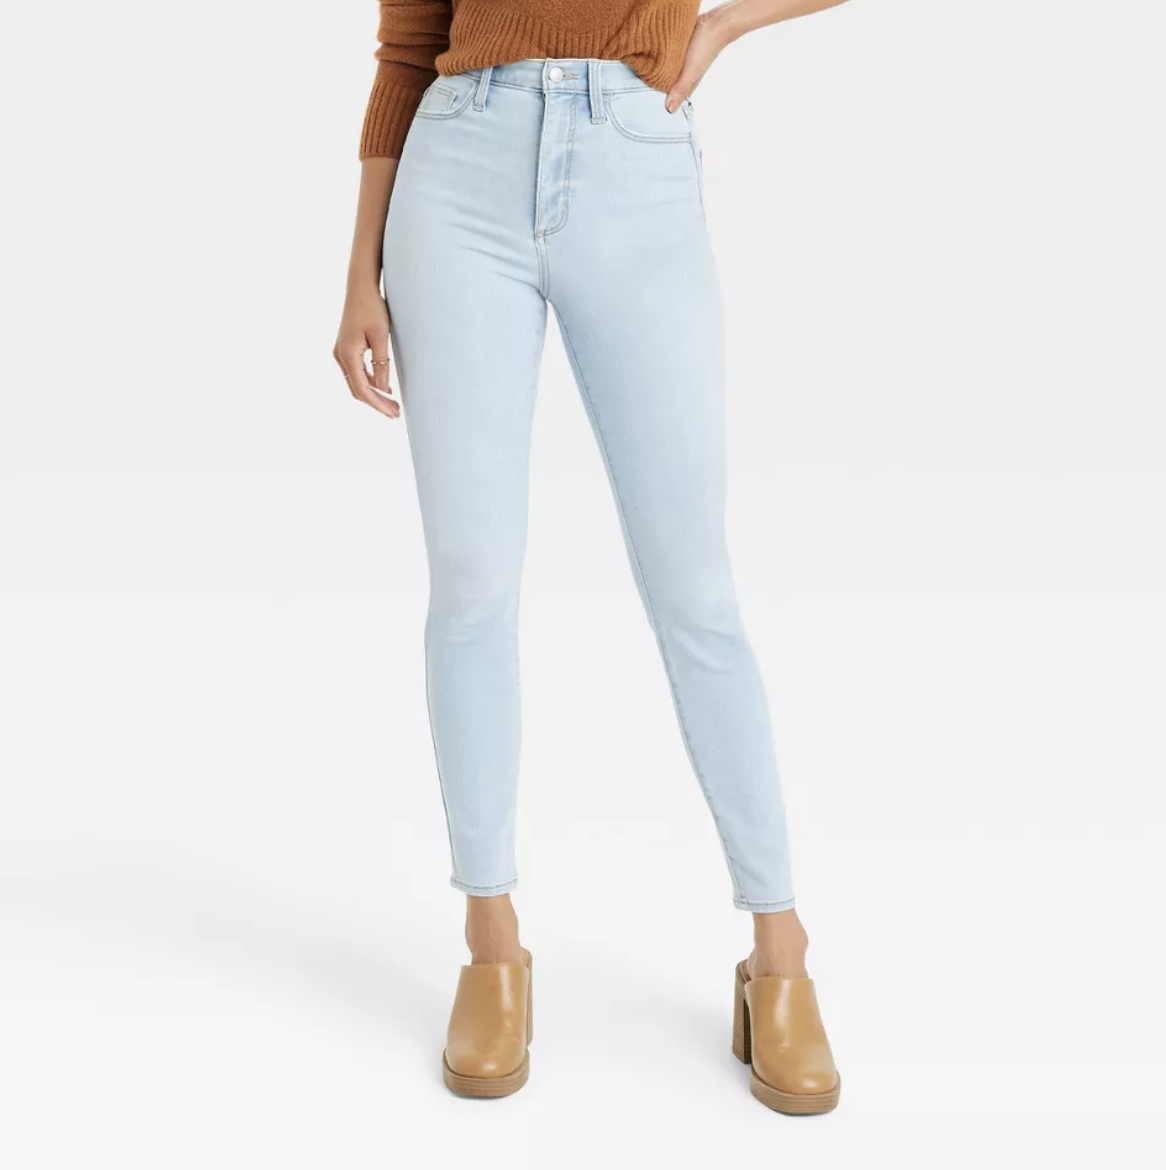 Model wearing skinny jeans